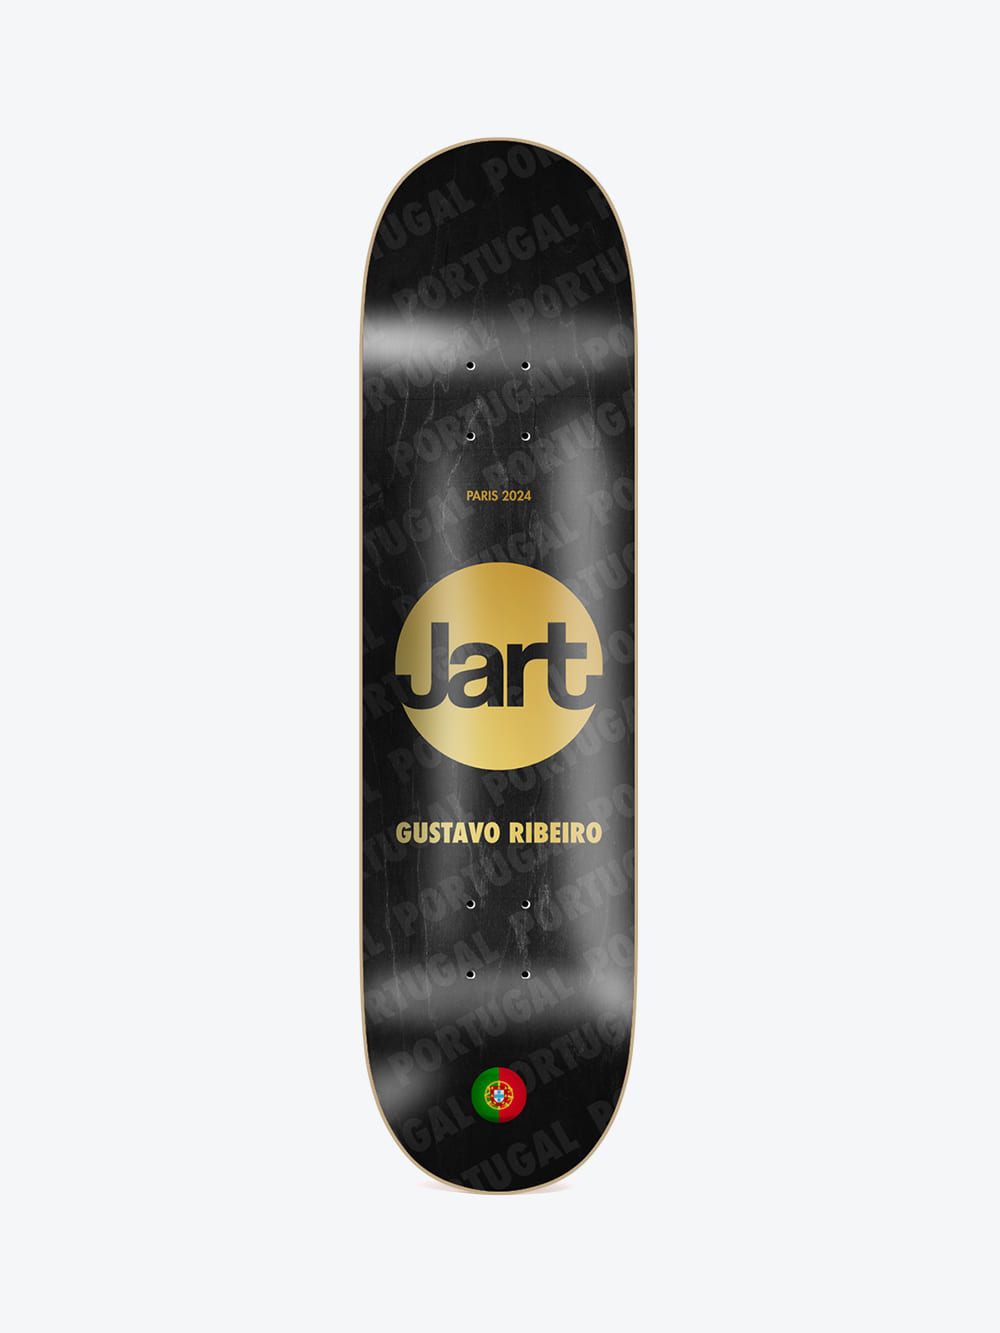 Jart - Paris 2024 8.0″ Gustavo Ribeiro deck